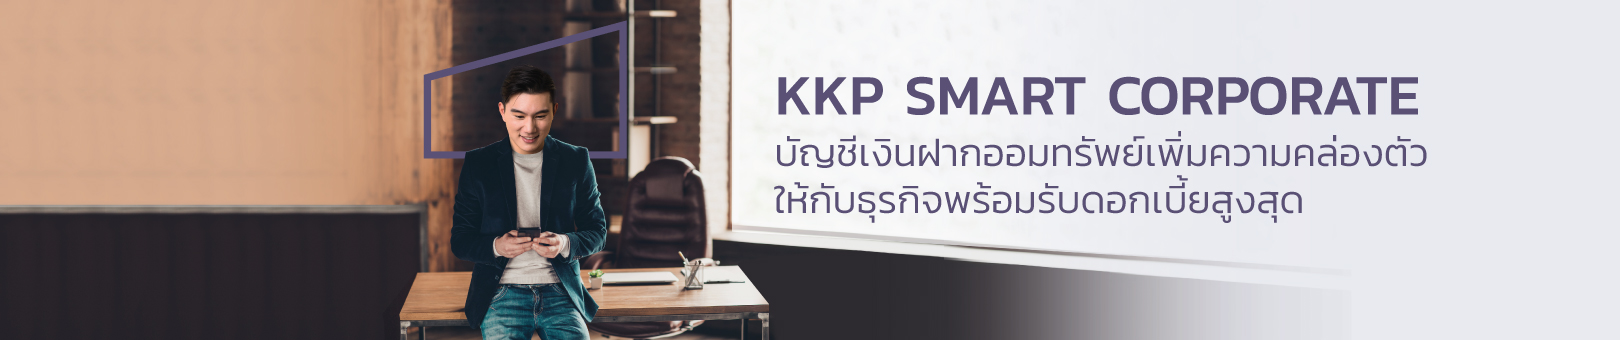 KKP-Smart-Corporate_1620x340